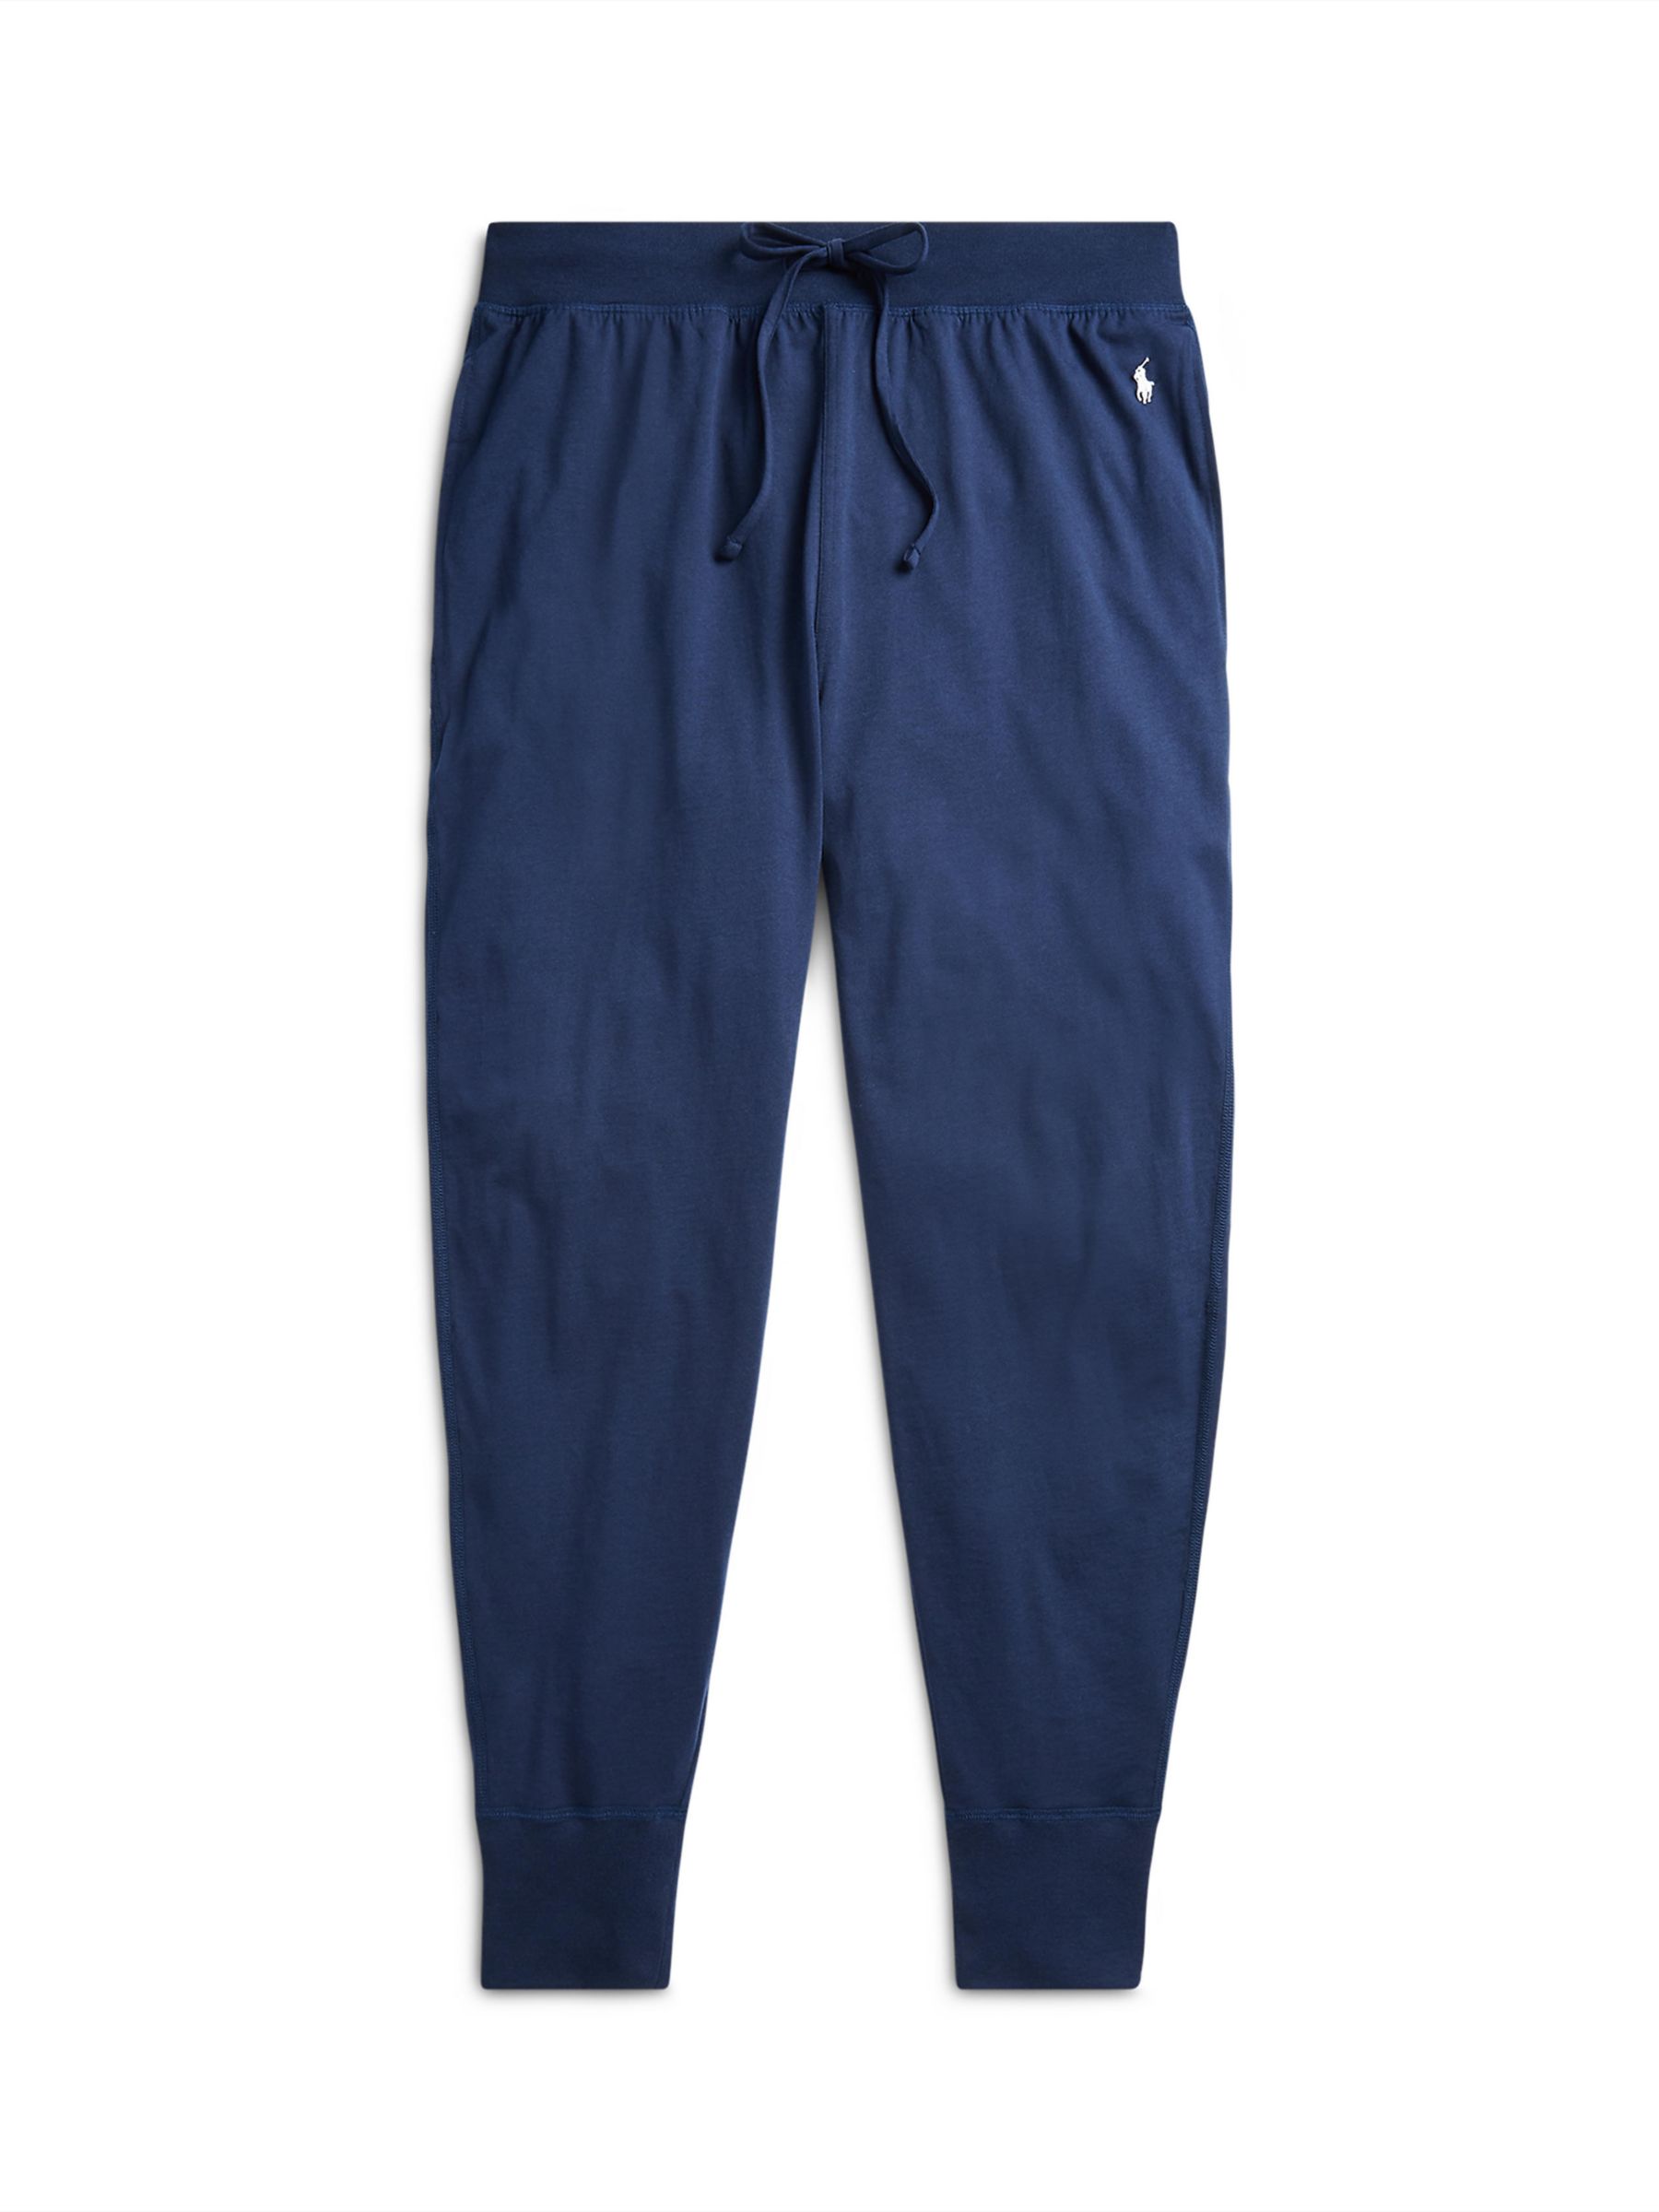 Buy Ralph Lauren Liquid Cotton Pyjama Pants, Blue Online at johnlewis.com